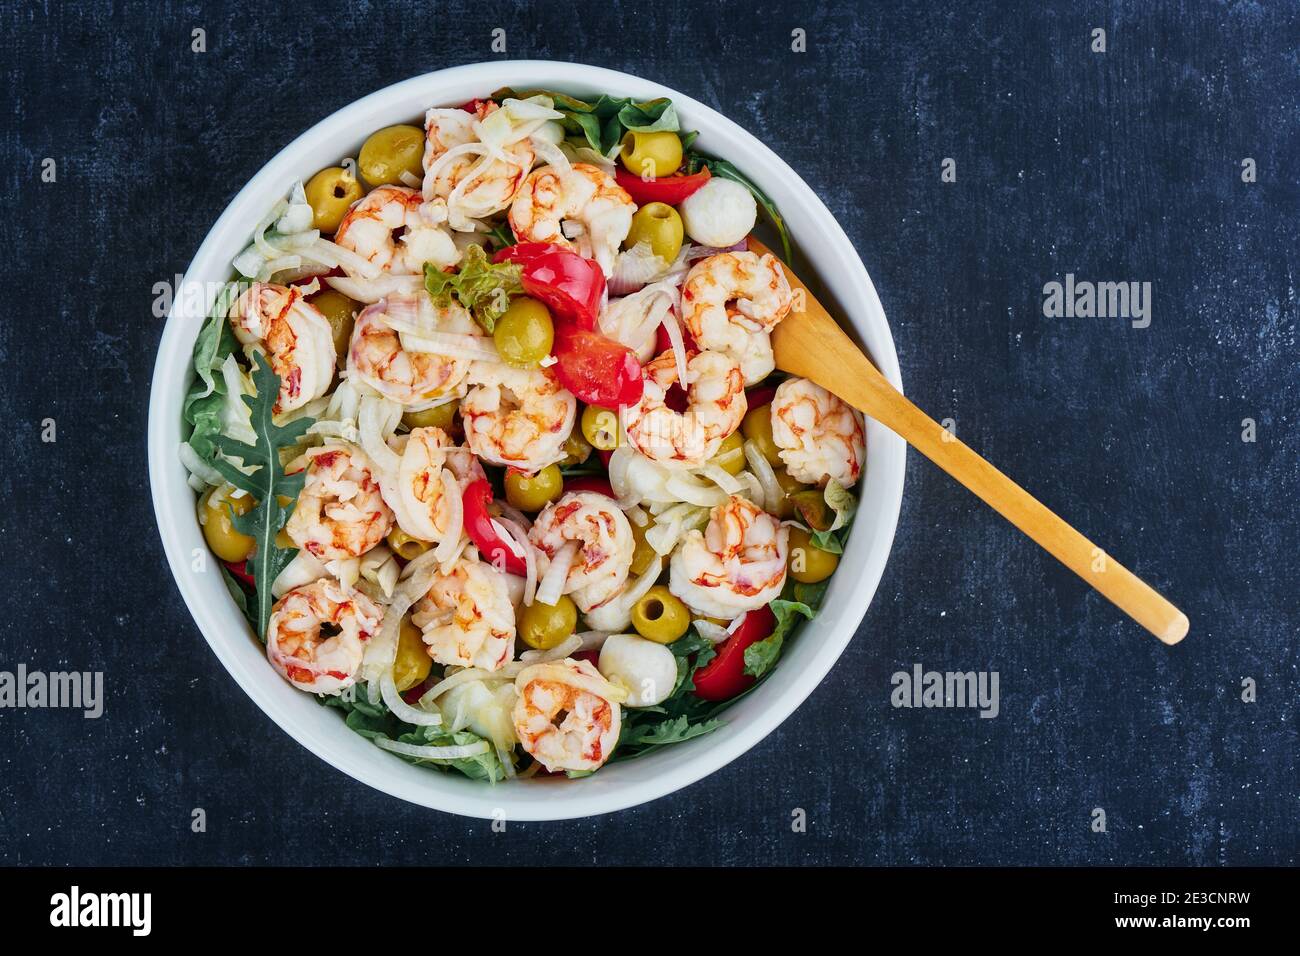 Salade de crevettes, olives, mozzarella, tomates et sauce à l'huile d'olive, vue rapprochée, vue de dessus Banque D'Images